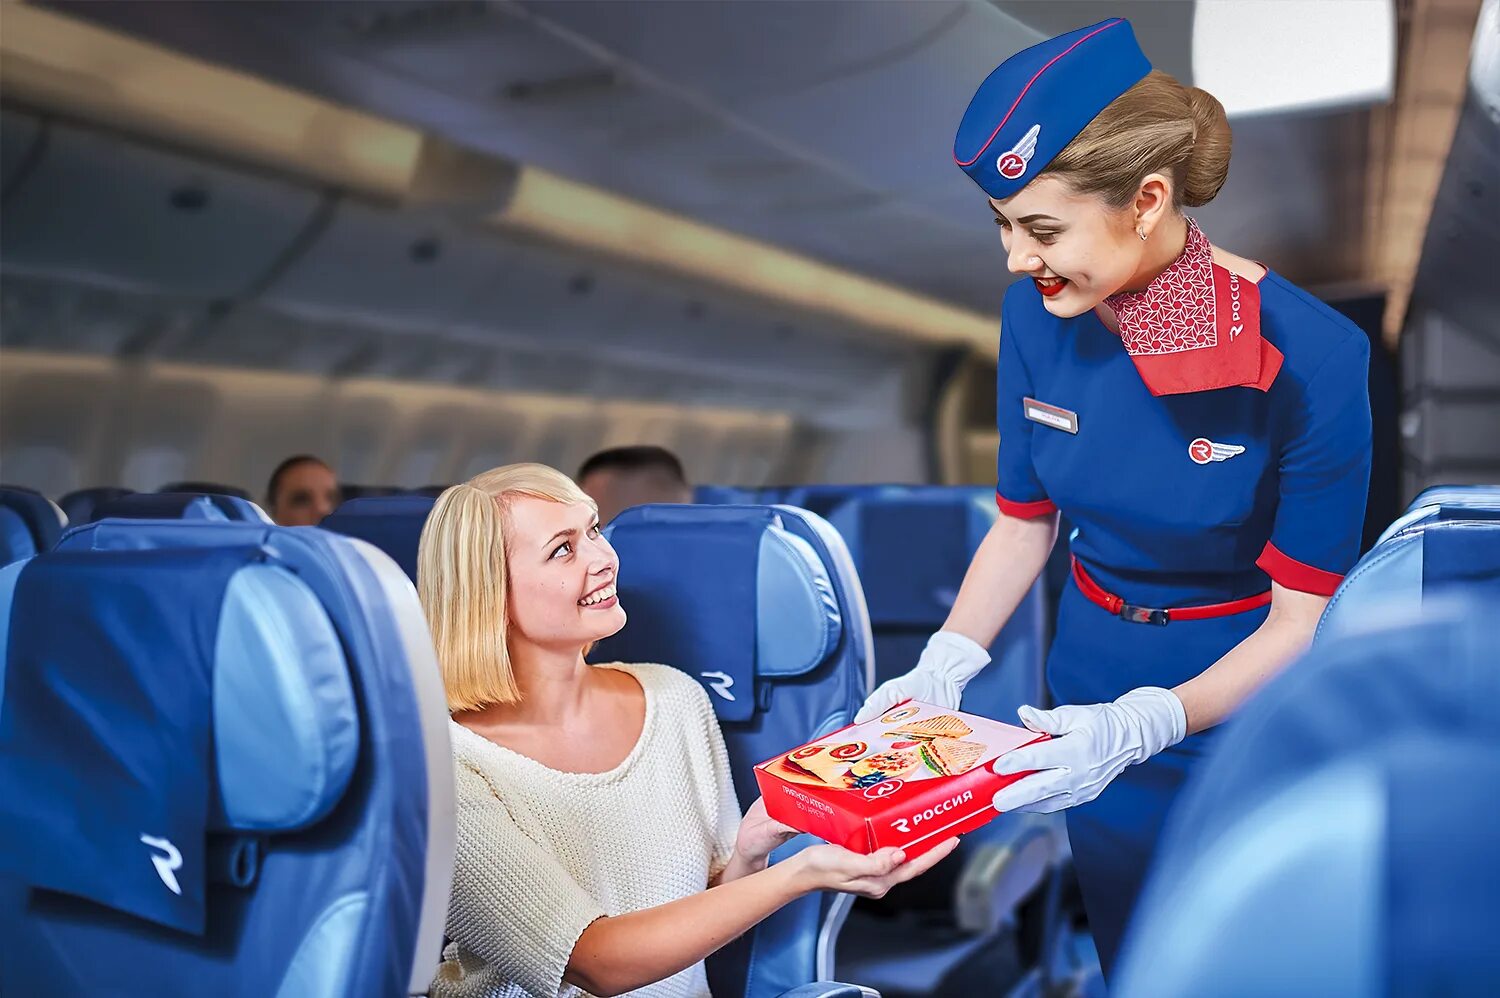 Обслуживание пассажиров на транспорте. Авиакомпания Россия. Стюардесса с едой. Стюардесса на борту. Стюардесса с едой в самолете.